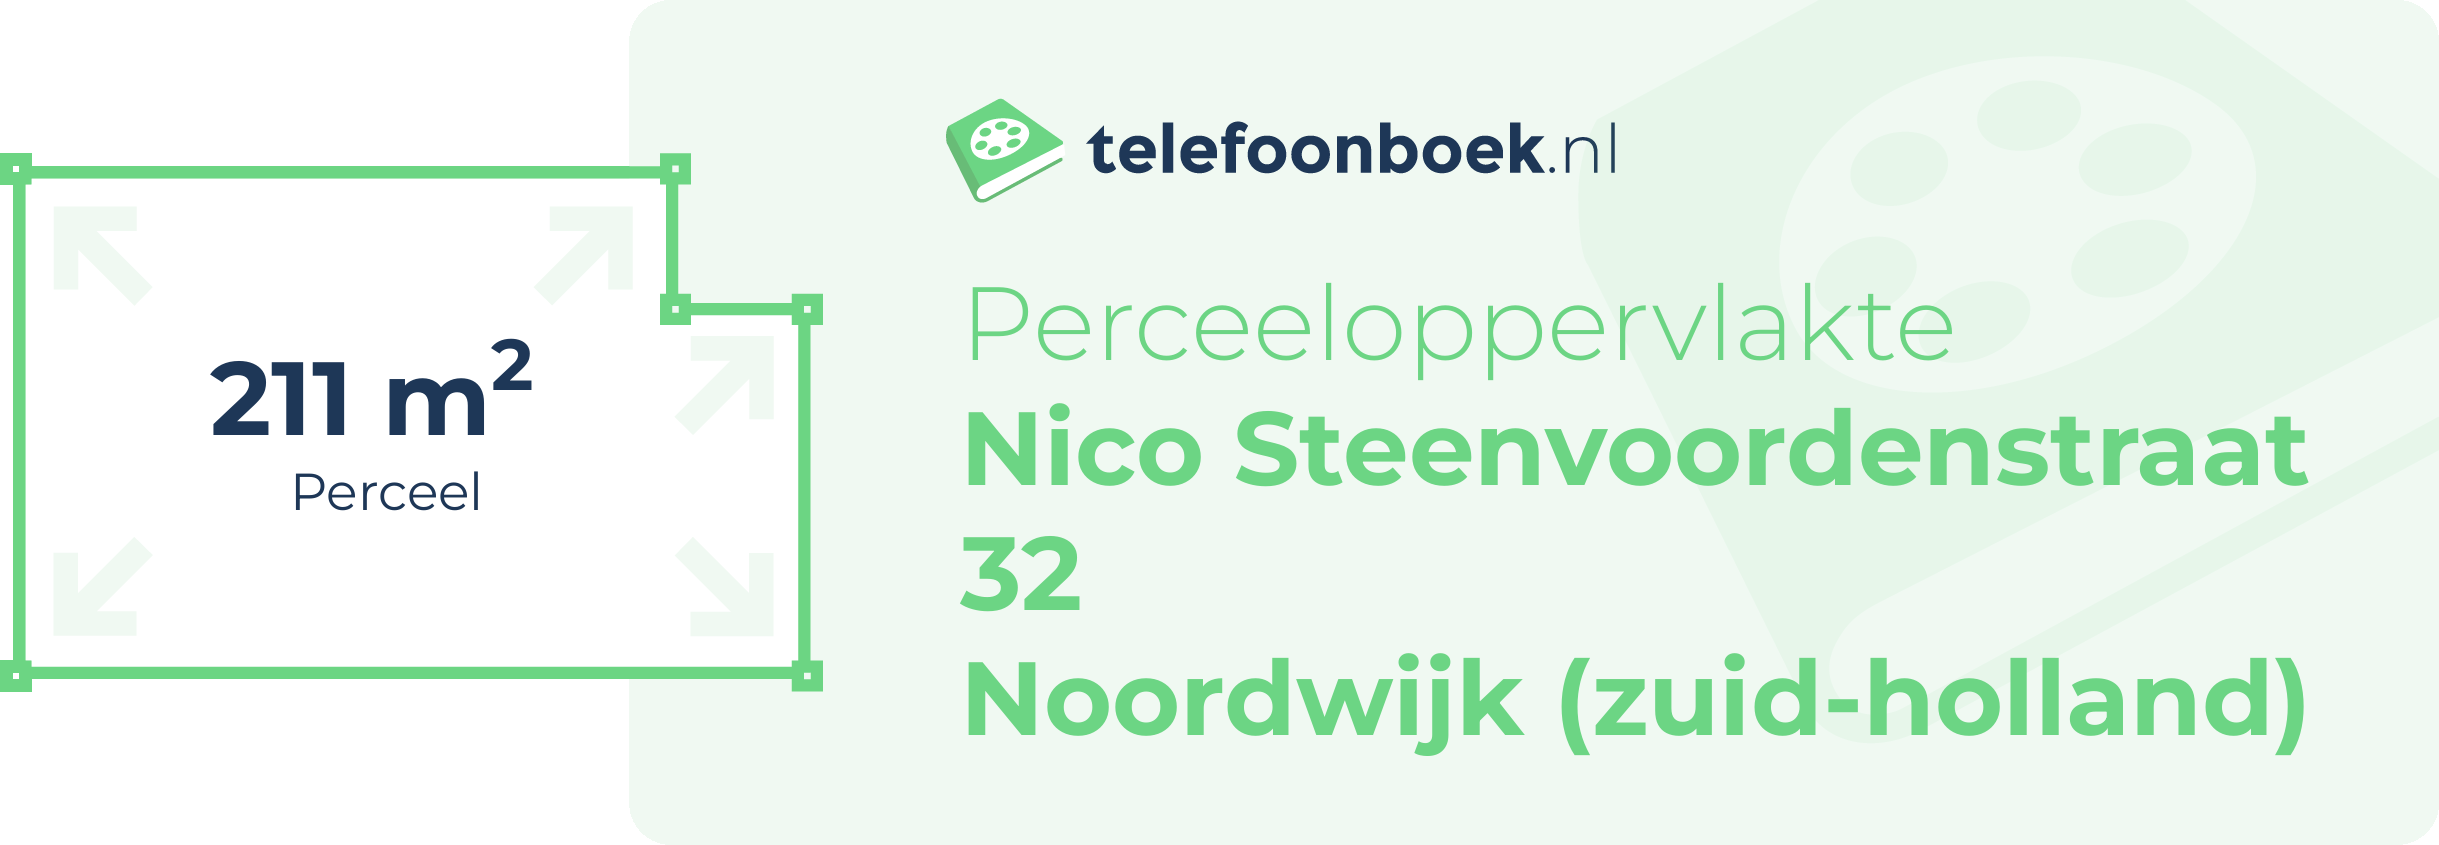 Perceeloppervlakte Nico Steenvoordenstraat 32 Noordwijk (Zuid-Holland)